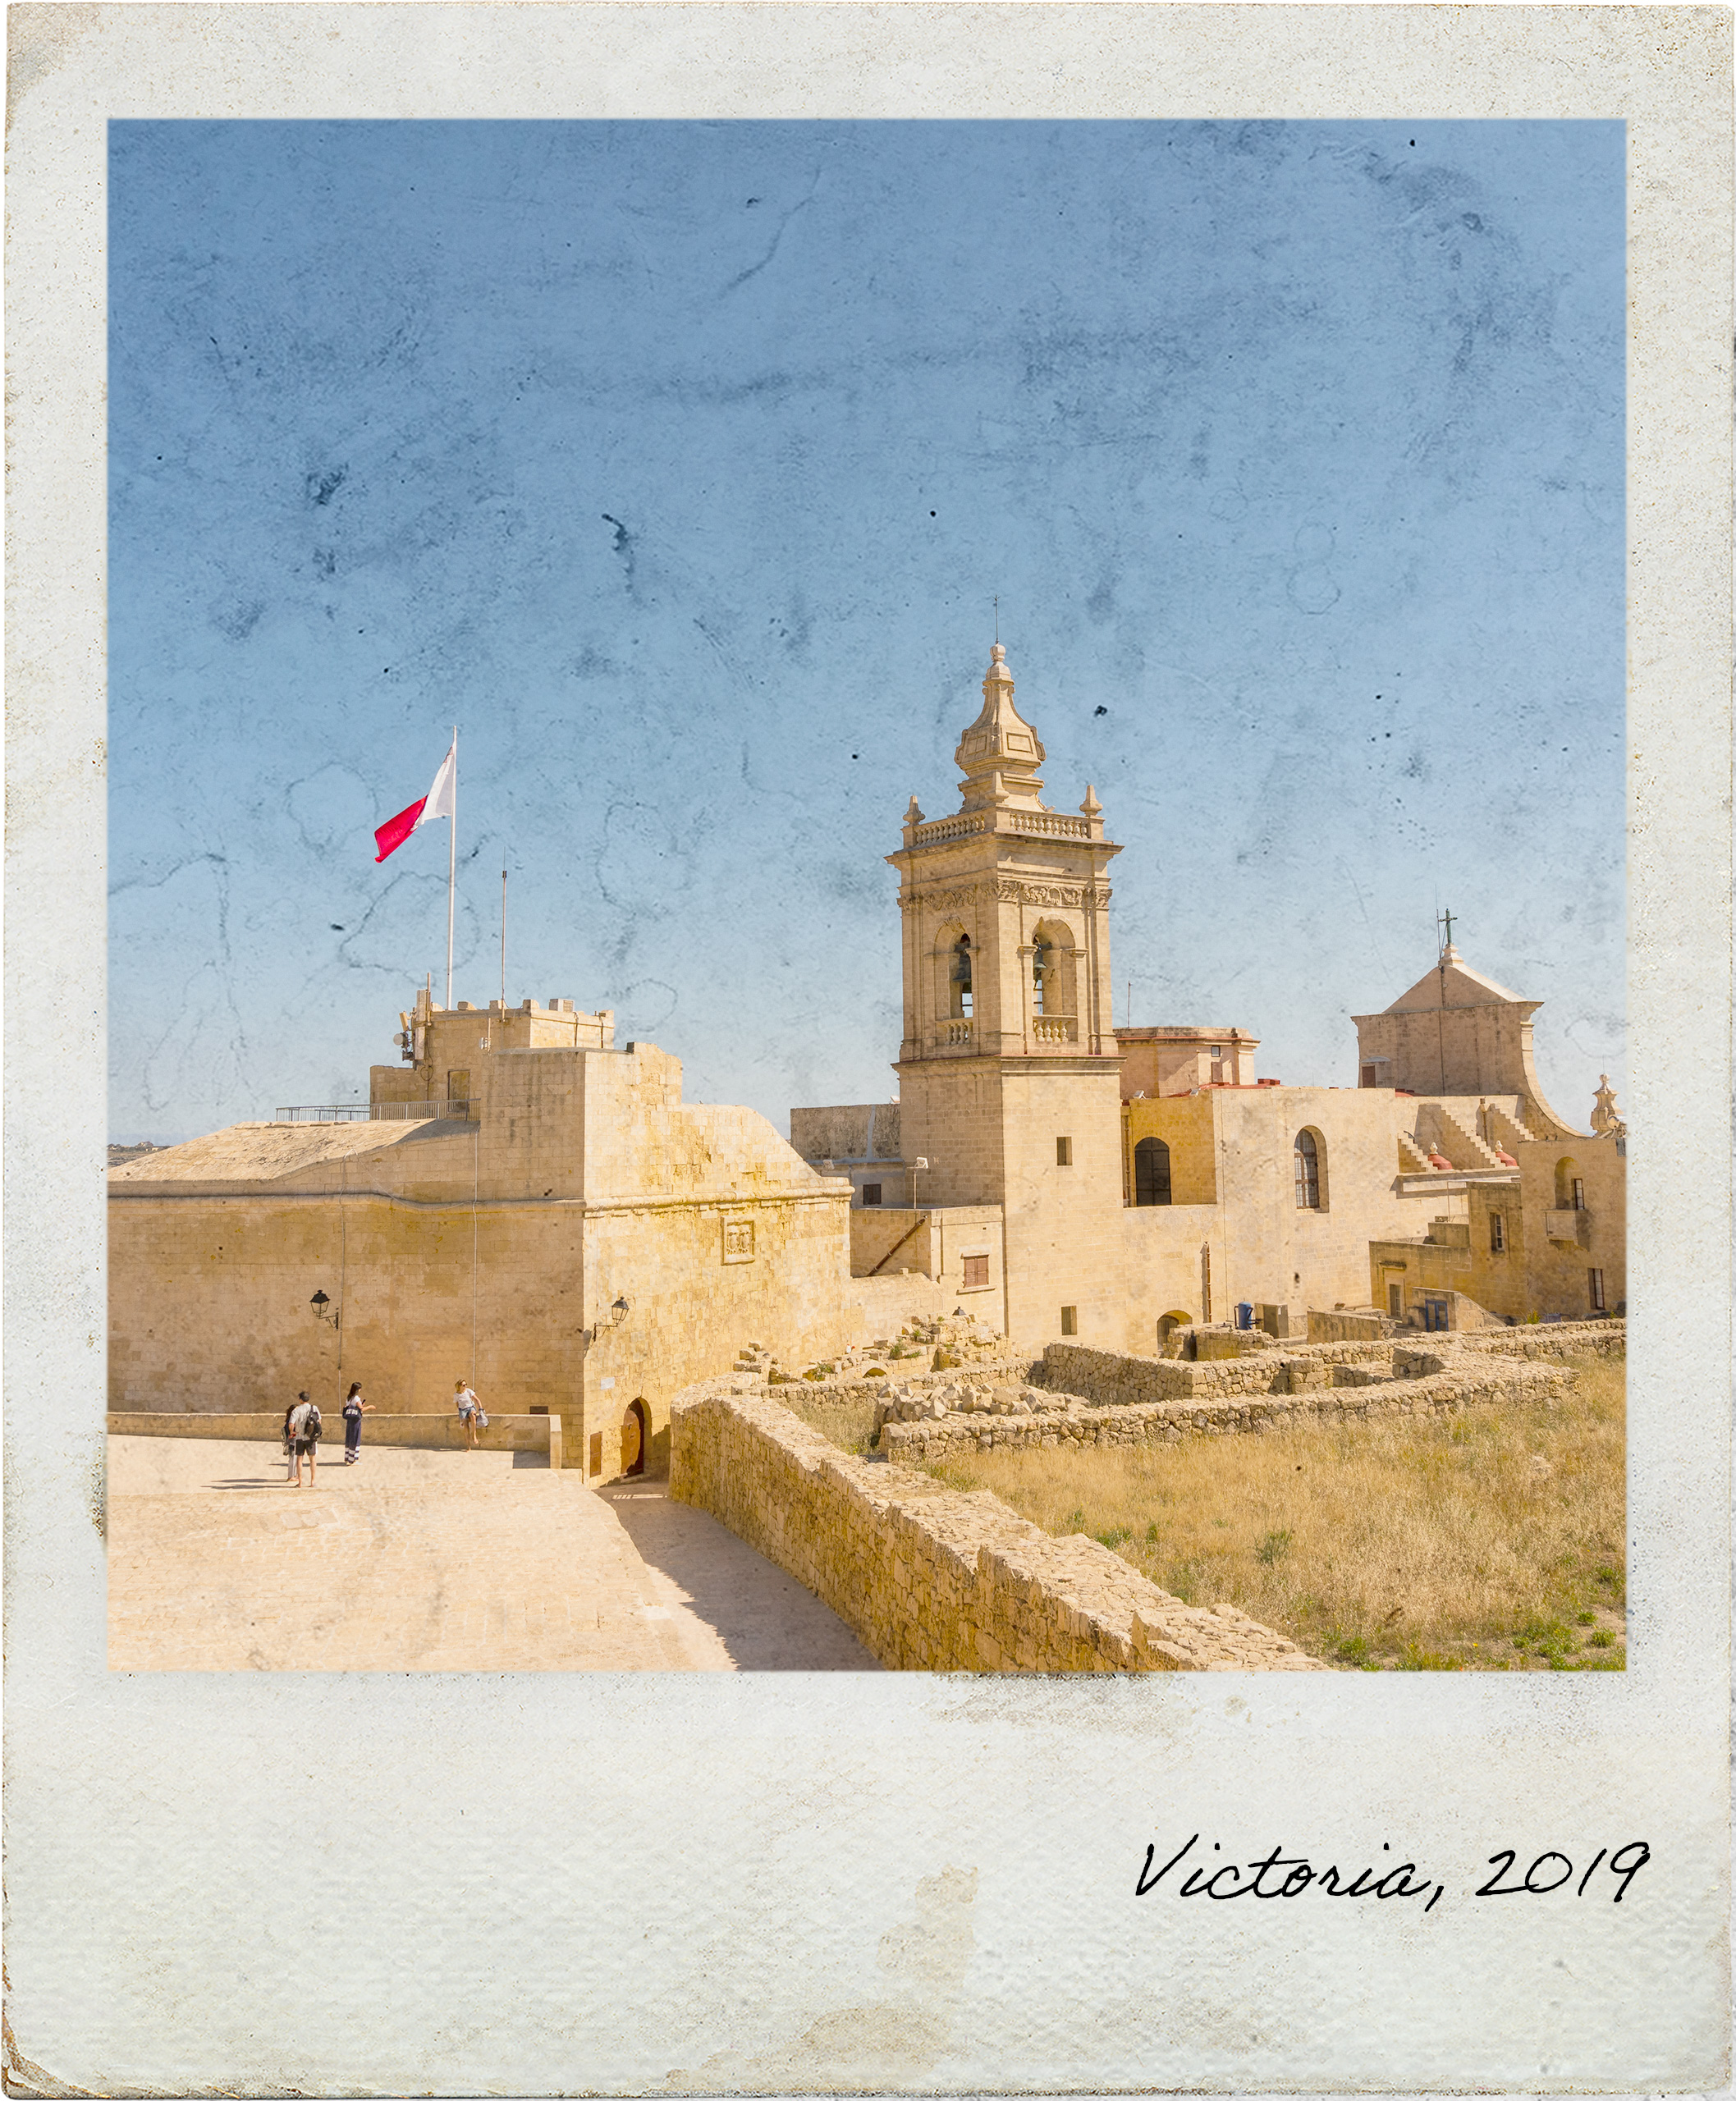 Cittadella in Victoria, Gozo